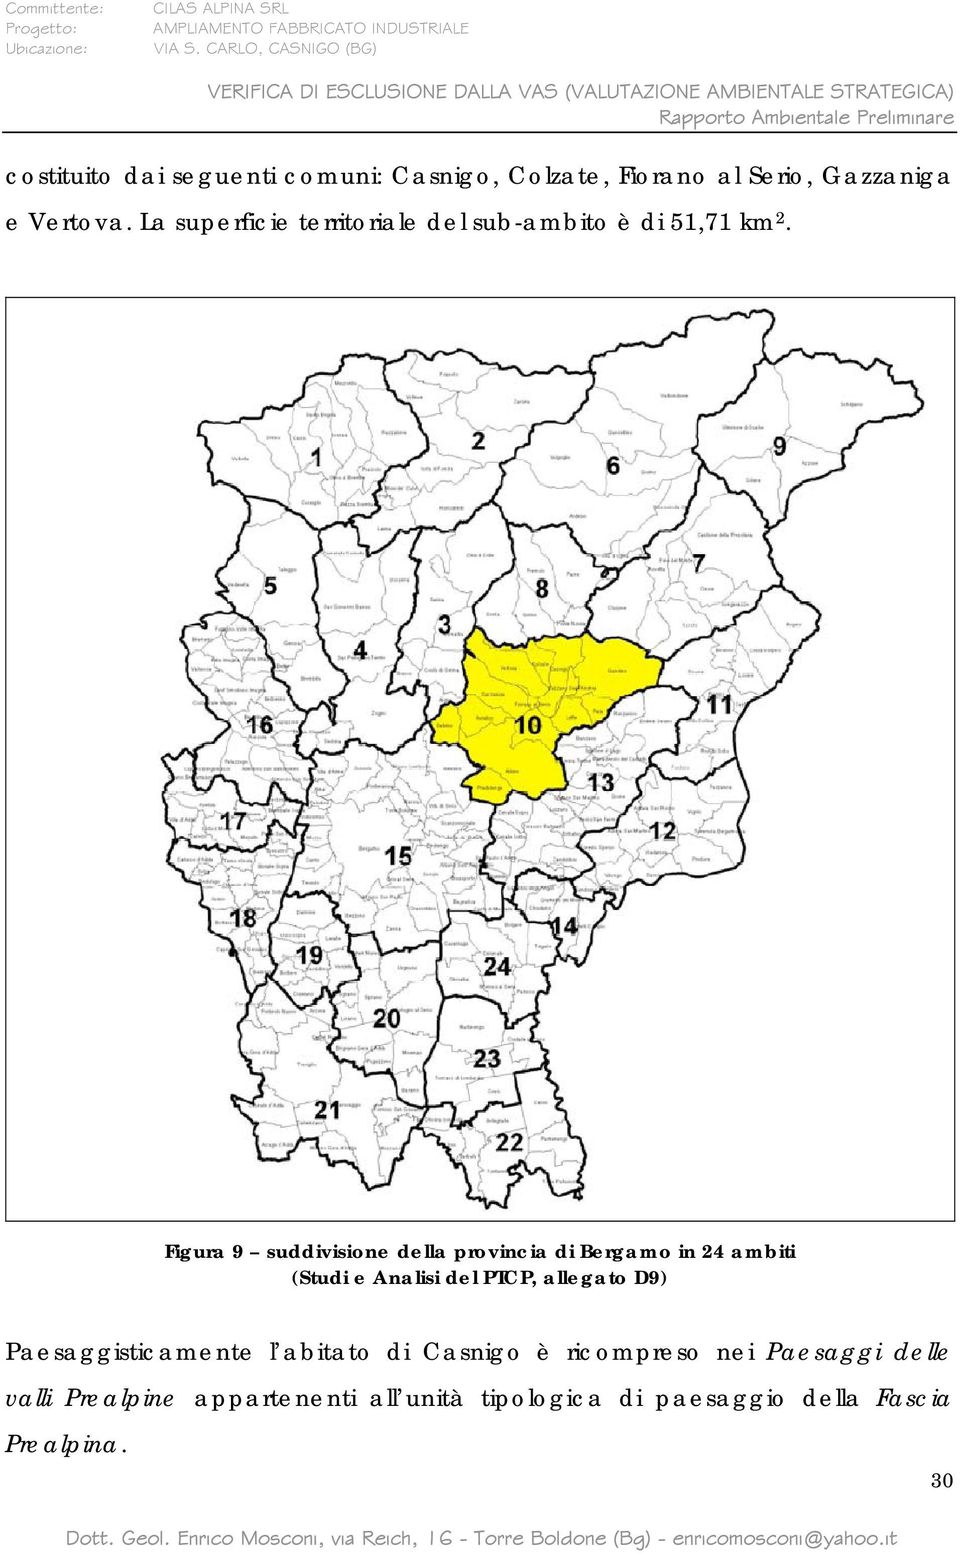 Figura 9 suddivisione della provincia di Bergamo in 24 ambiti (Studi e Analisi del PTCP, allegato D9)